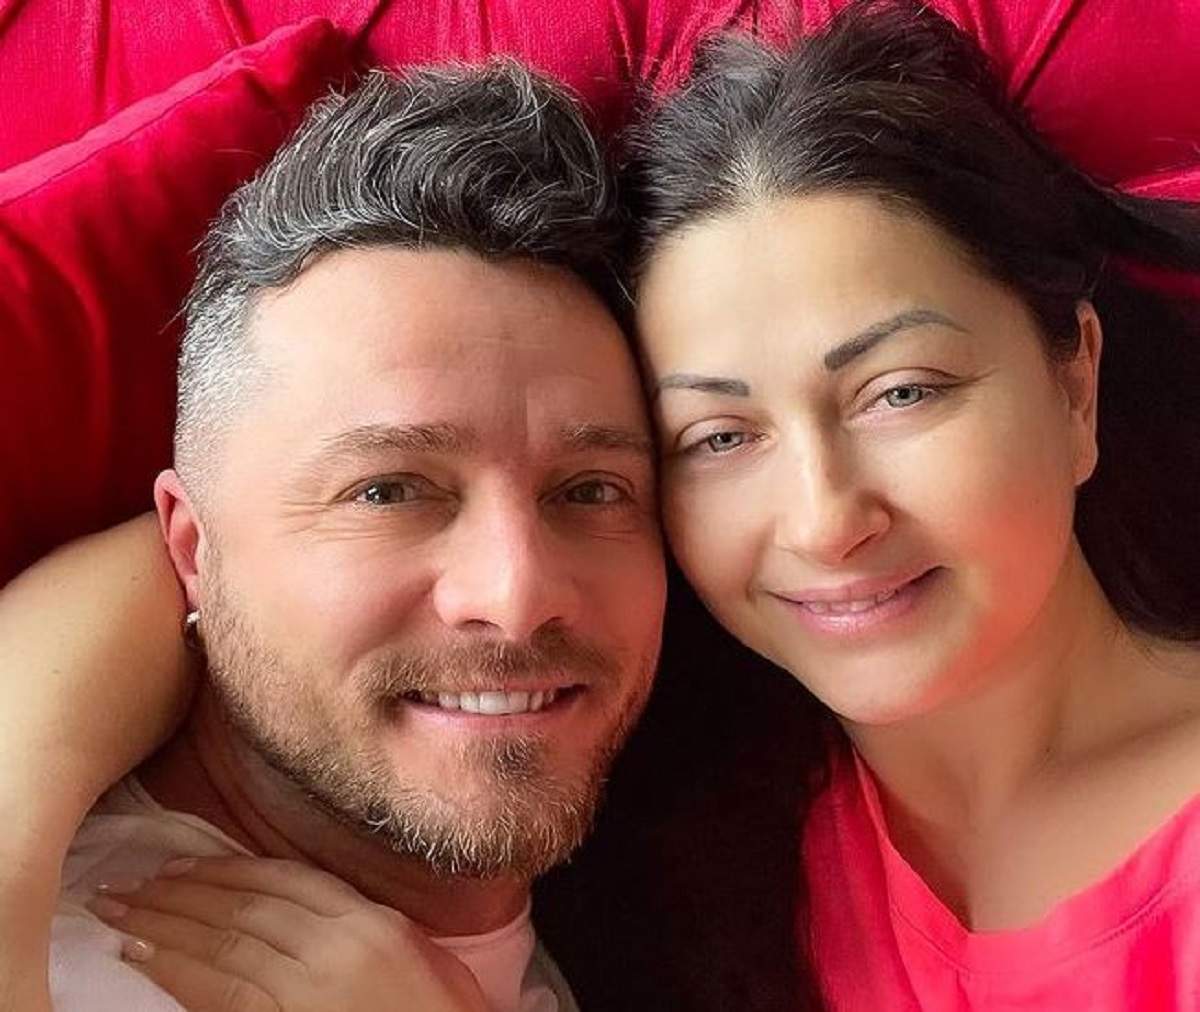 Gabriela Cristea și Tavi Clonda își fac un selfie. Ea portă un tricou roșu, iar el unul alb.